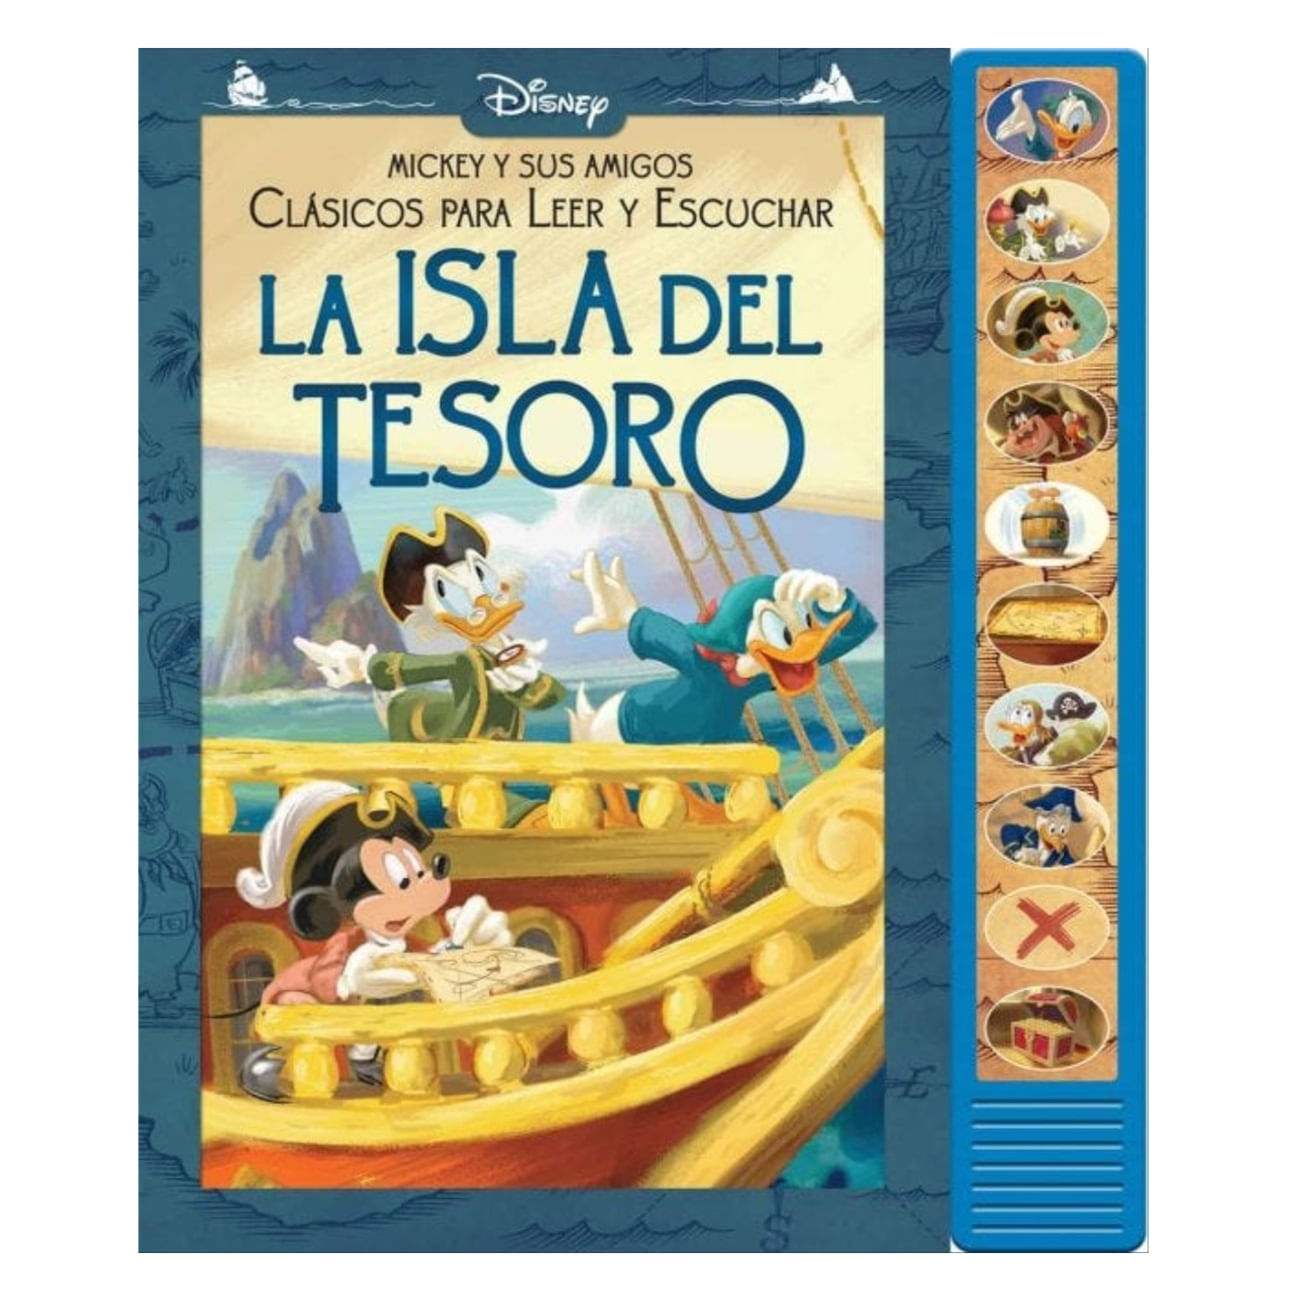 10 Bsb Disney Mickey y Amigos Rac: La Isla Del Tesoro